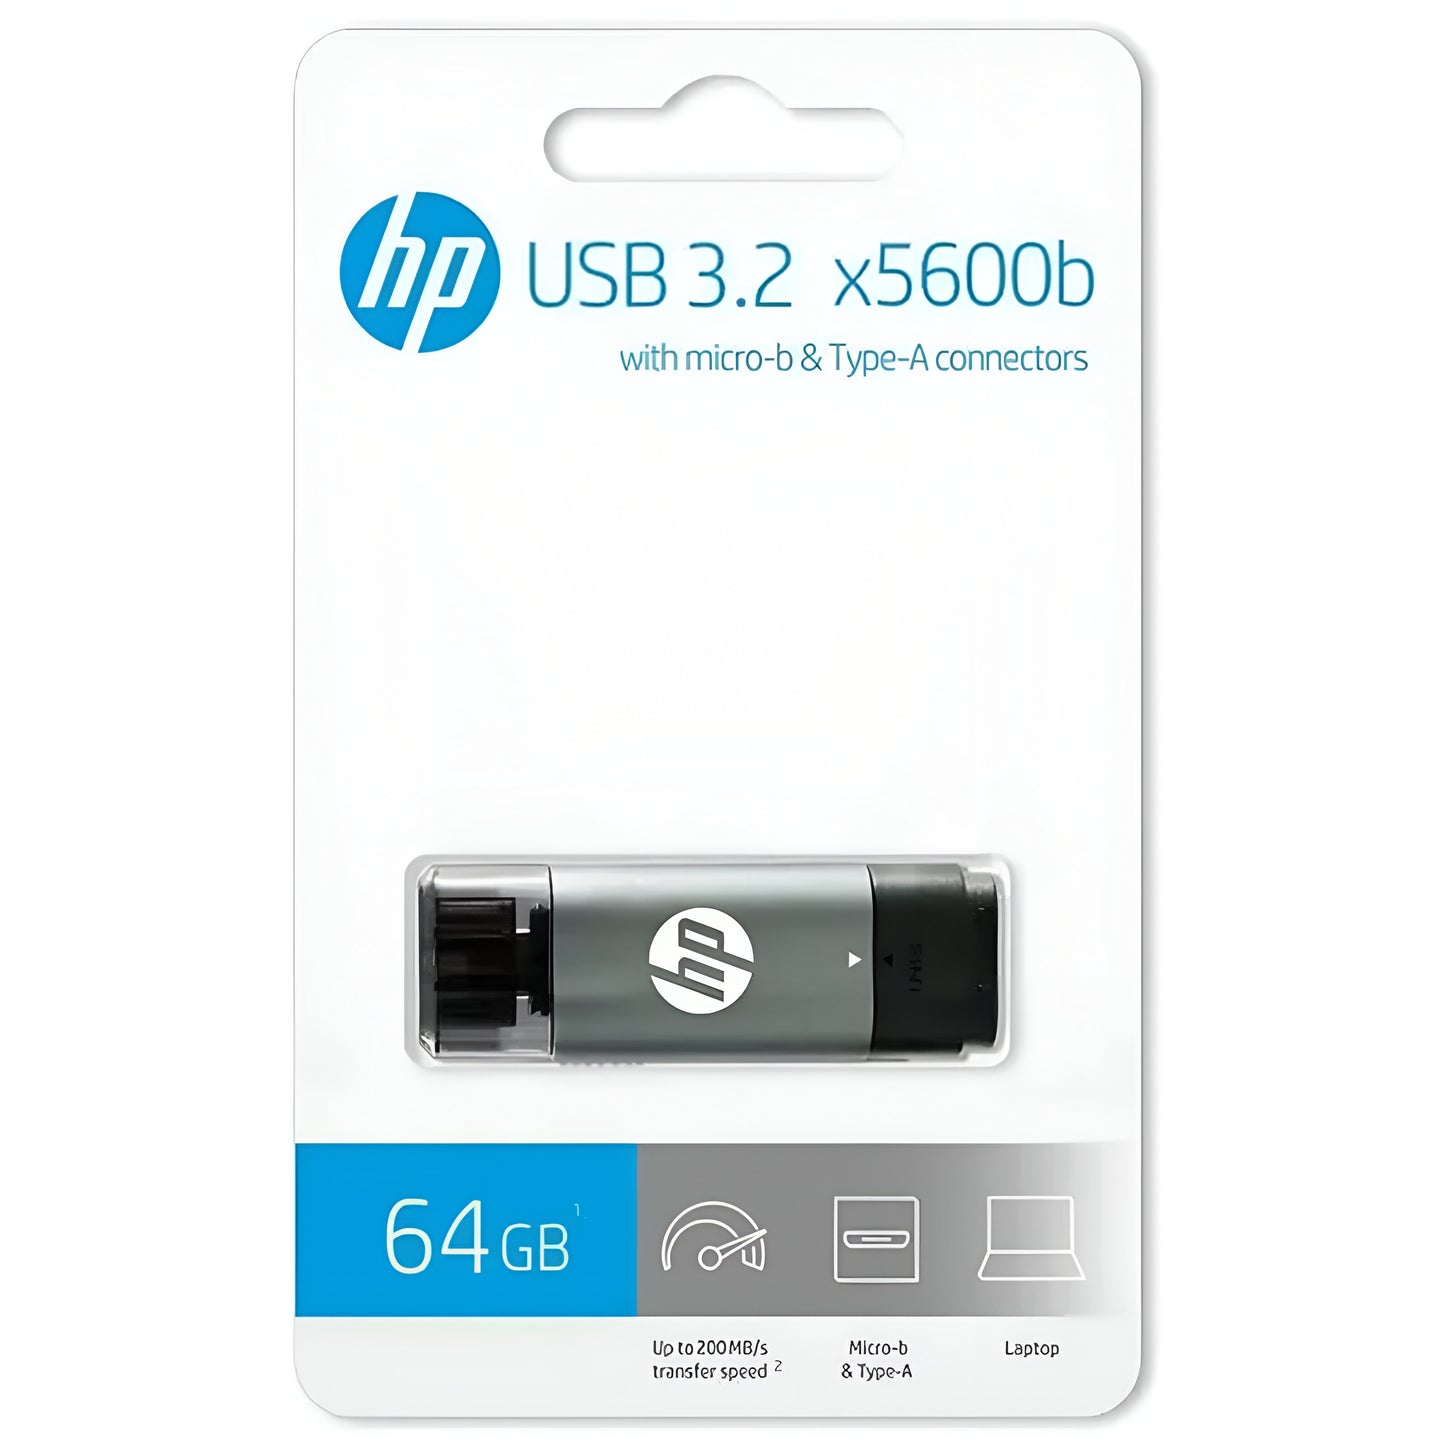 HP X5600B 64GB USB 3.2 Flash Drive 2Yr Wty w/ Micro-USB Adapter